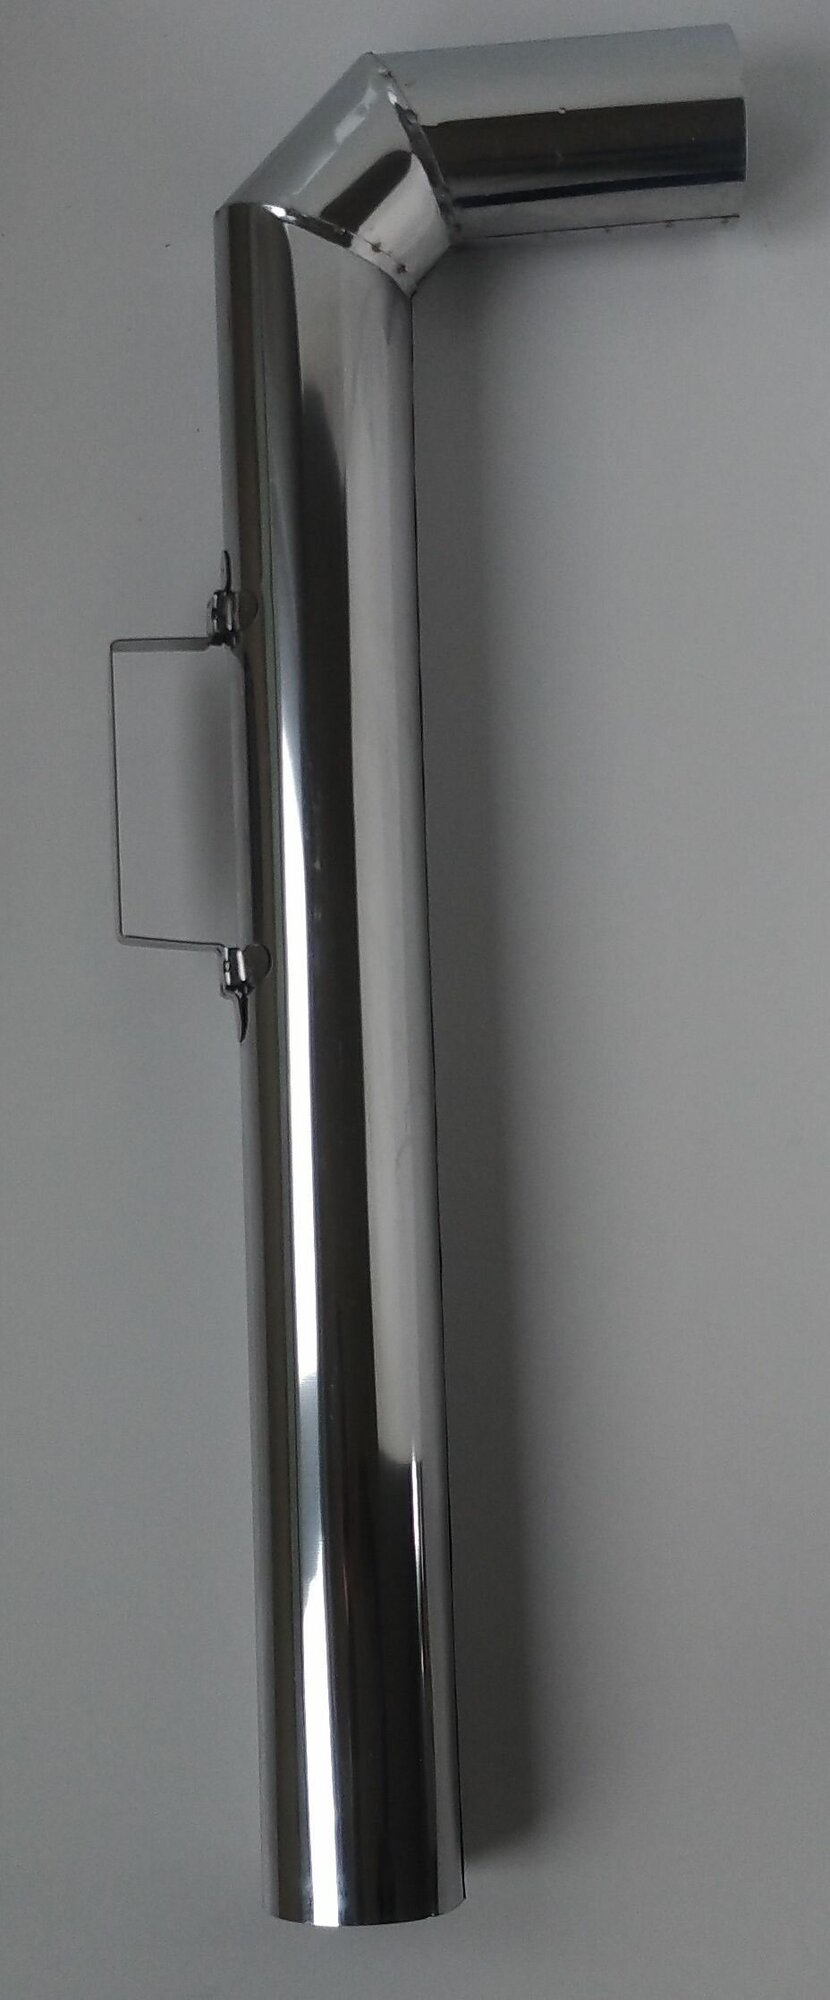 Труба для самовара 65 мм